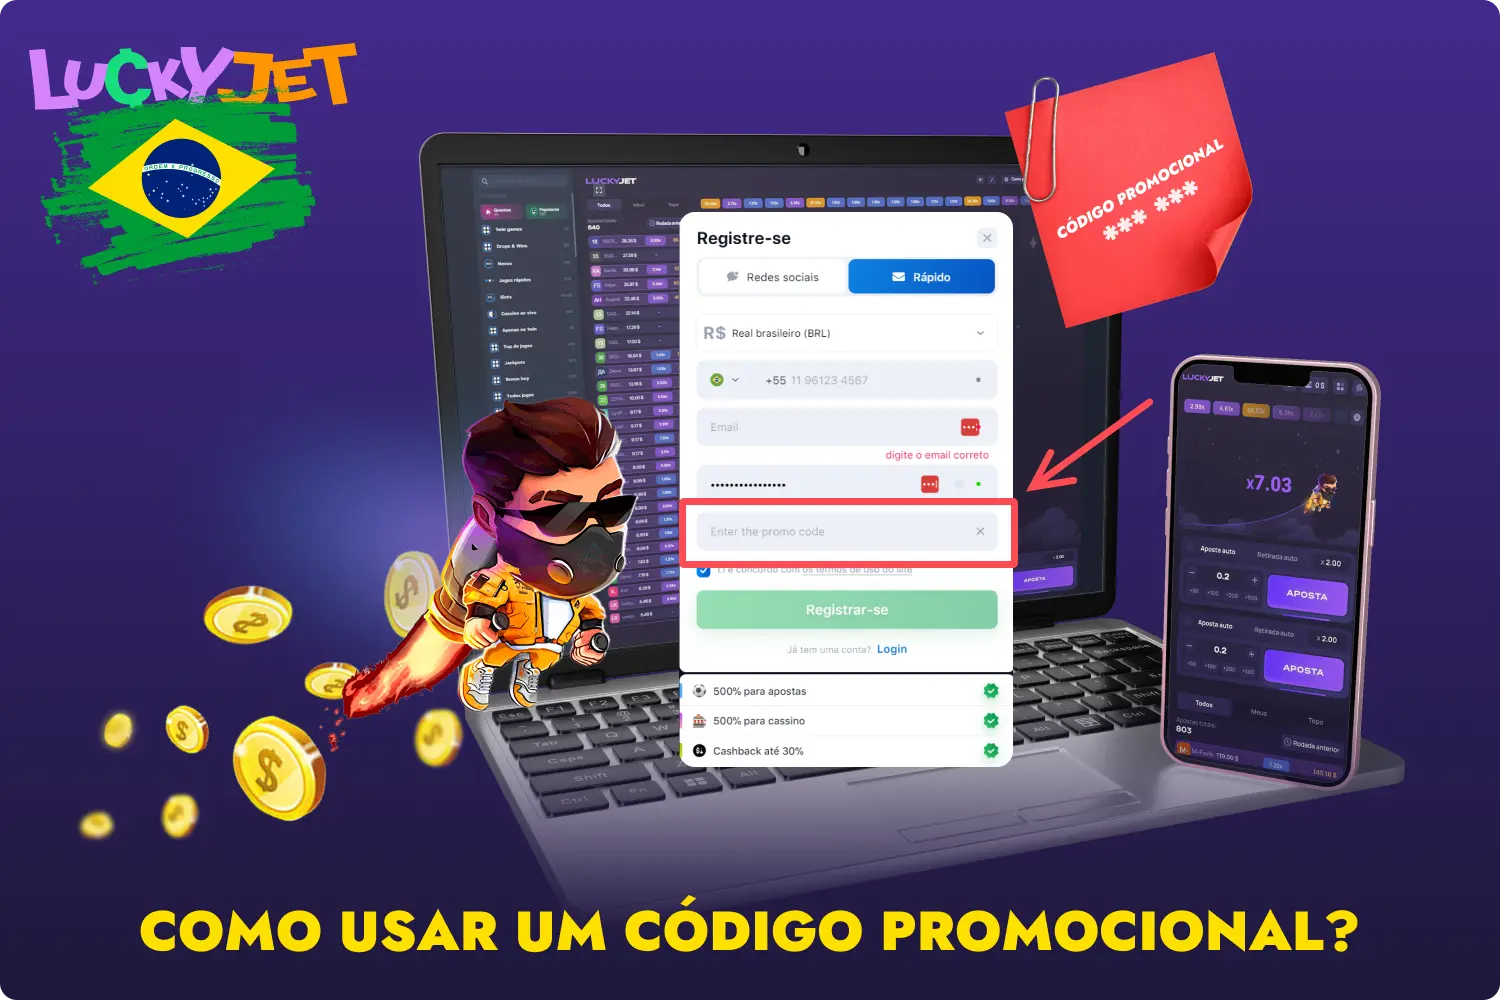 Os jogadores brasileiros podem ativar o código promocional Lucky Jet ao registarem-se no site oficial da 1win ou na aplicação móvel